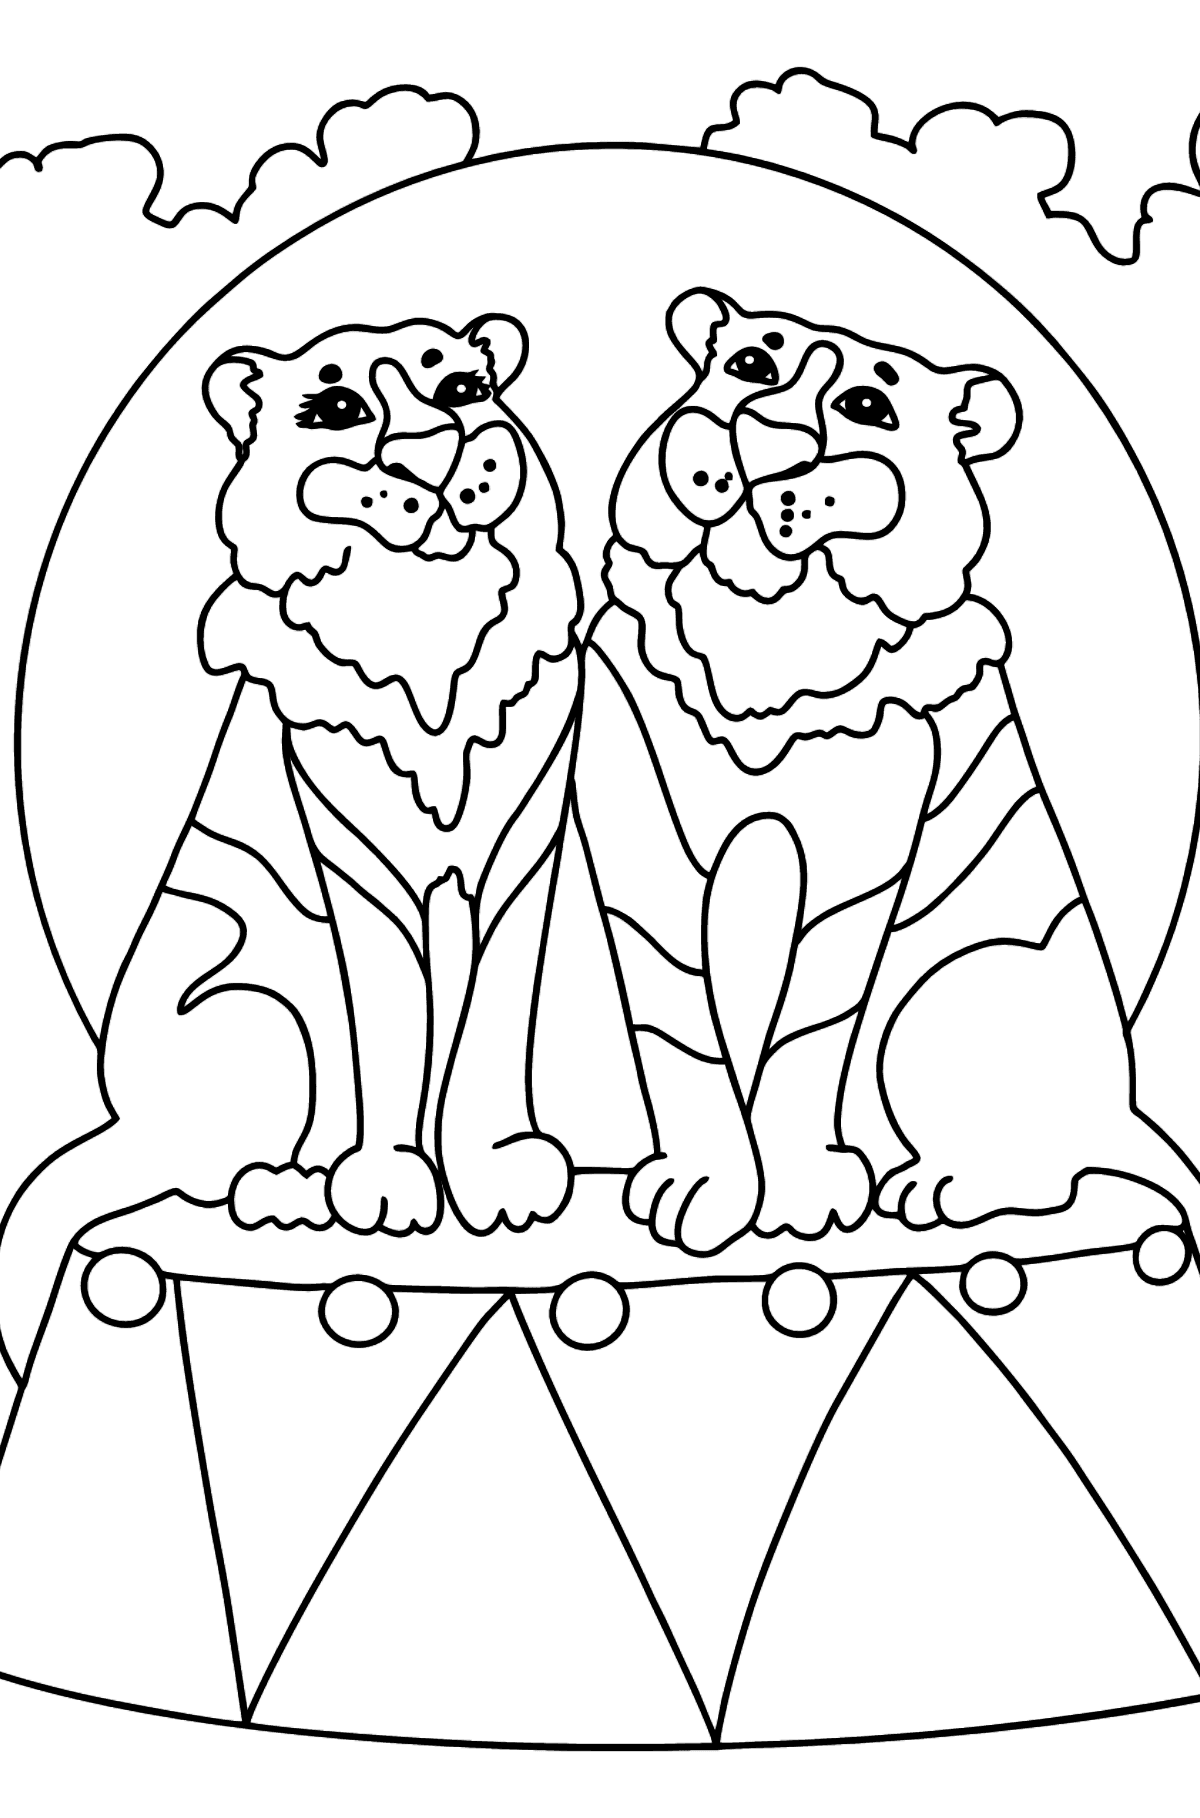 Kleurplaat tijgers in het circus (moeilijk) - kleurplaten voor kinderen